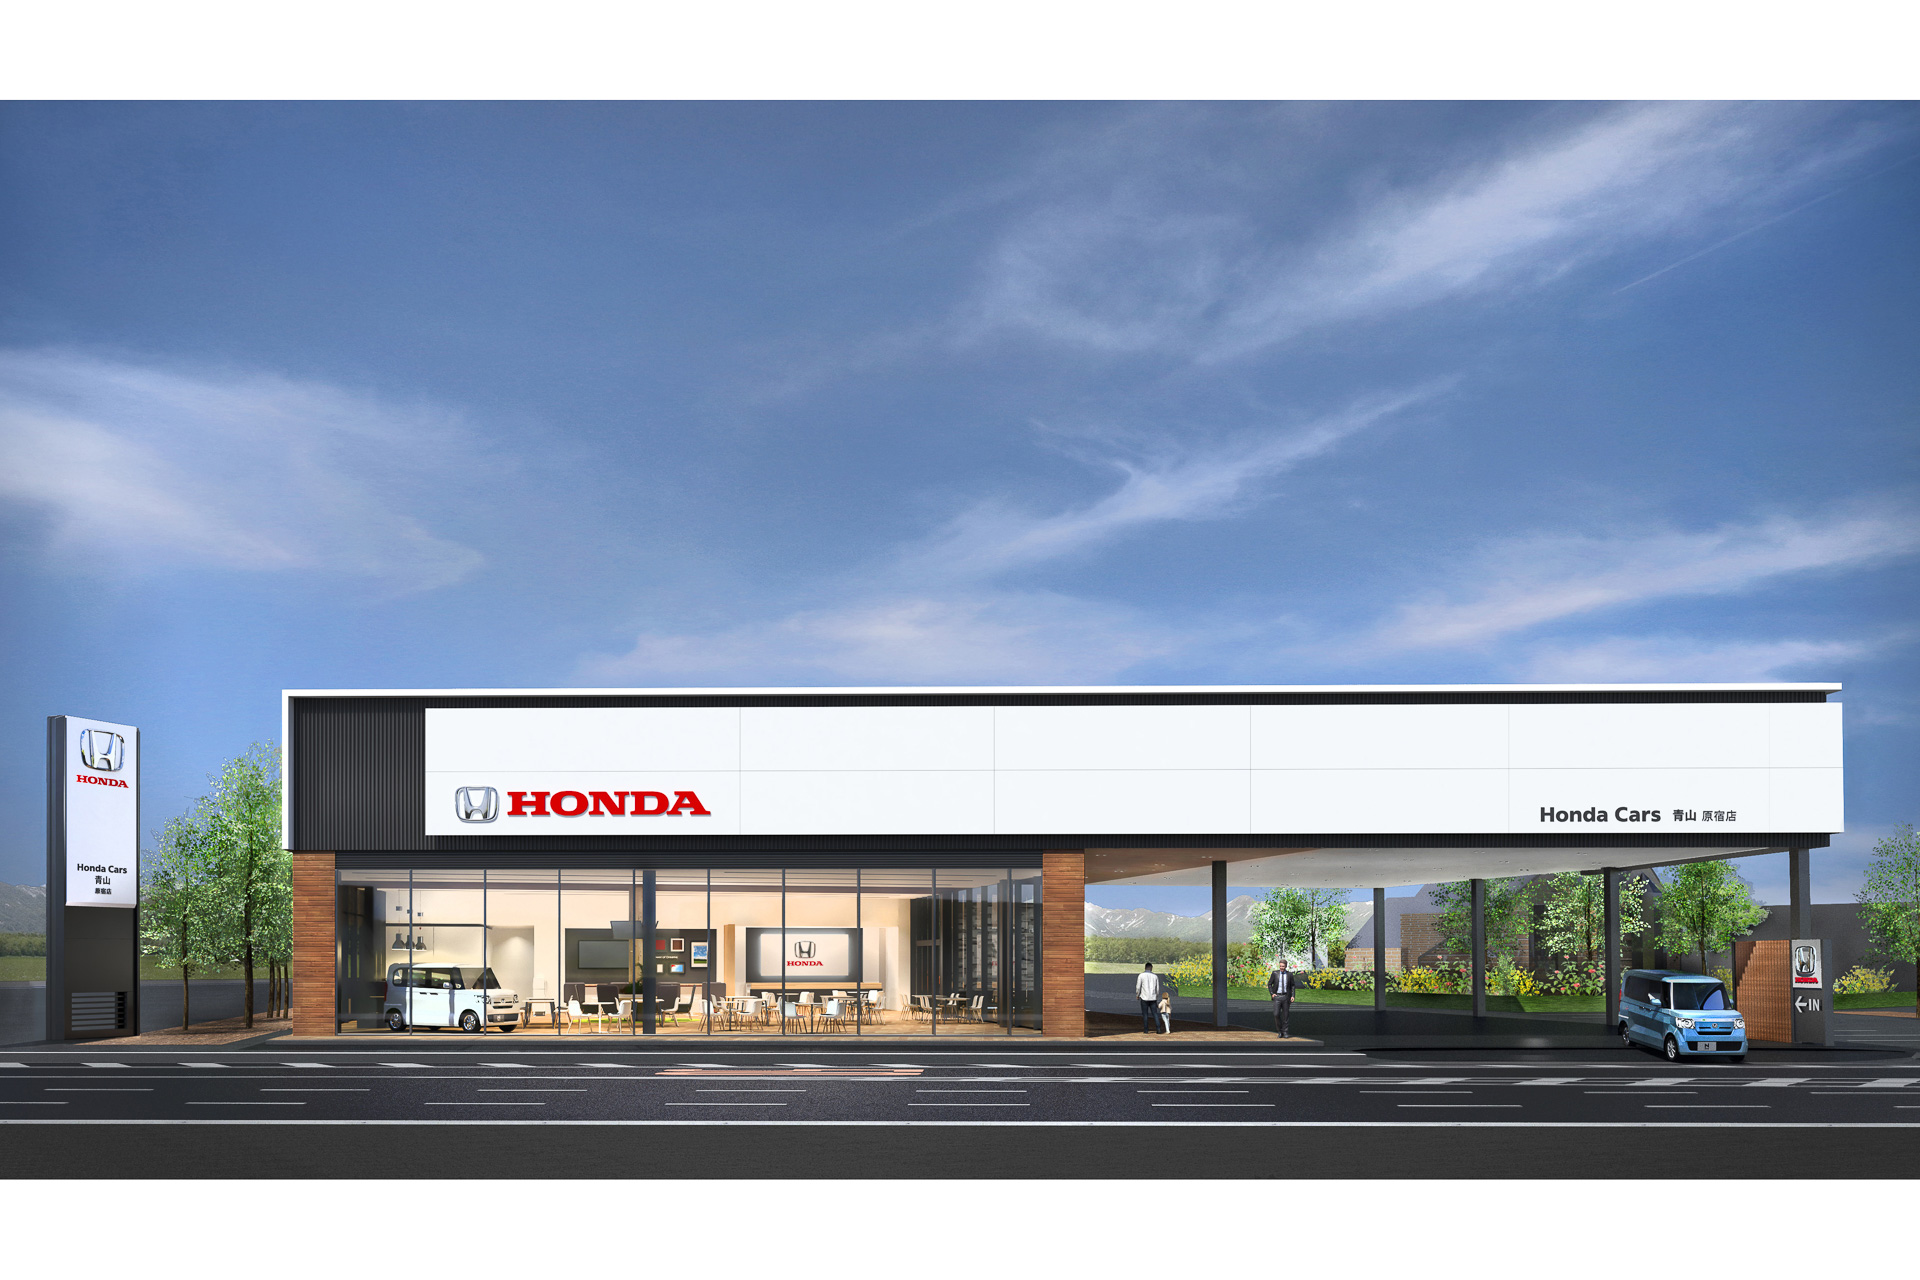 ホンダ 国内4輪車販売店 ホンダ カーズ 店舗デザインを刷新 新店舗デザイン Hdc2 0 導入 Car Watch